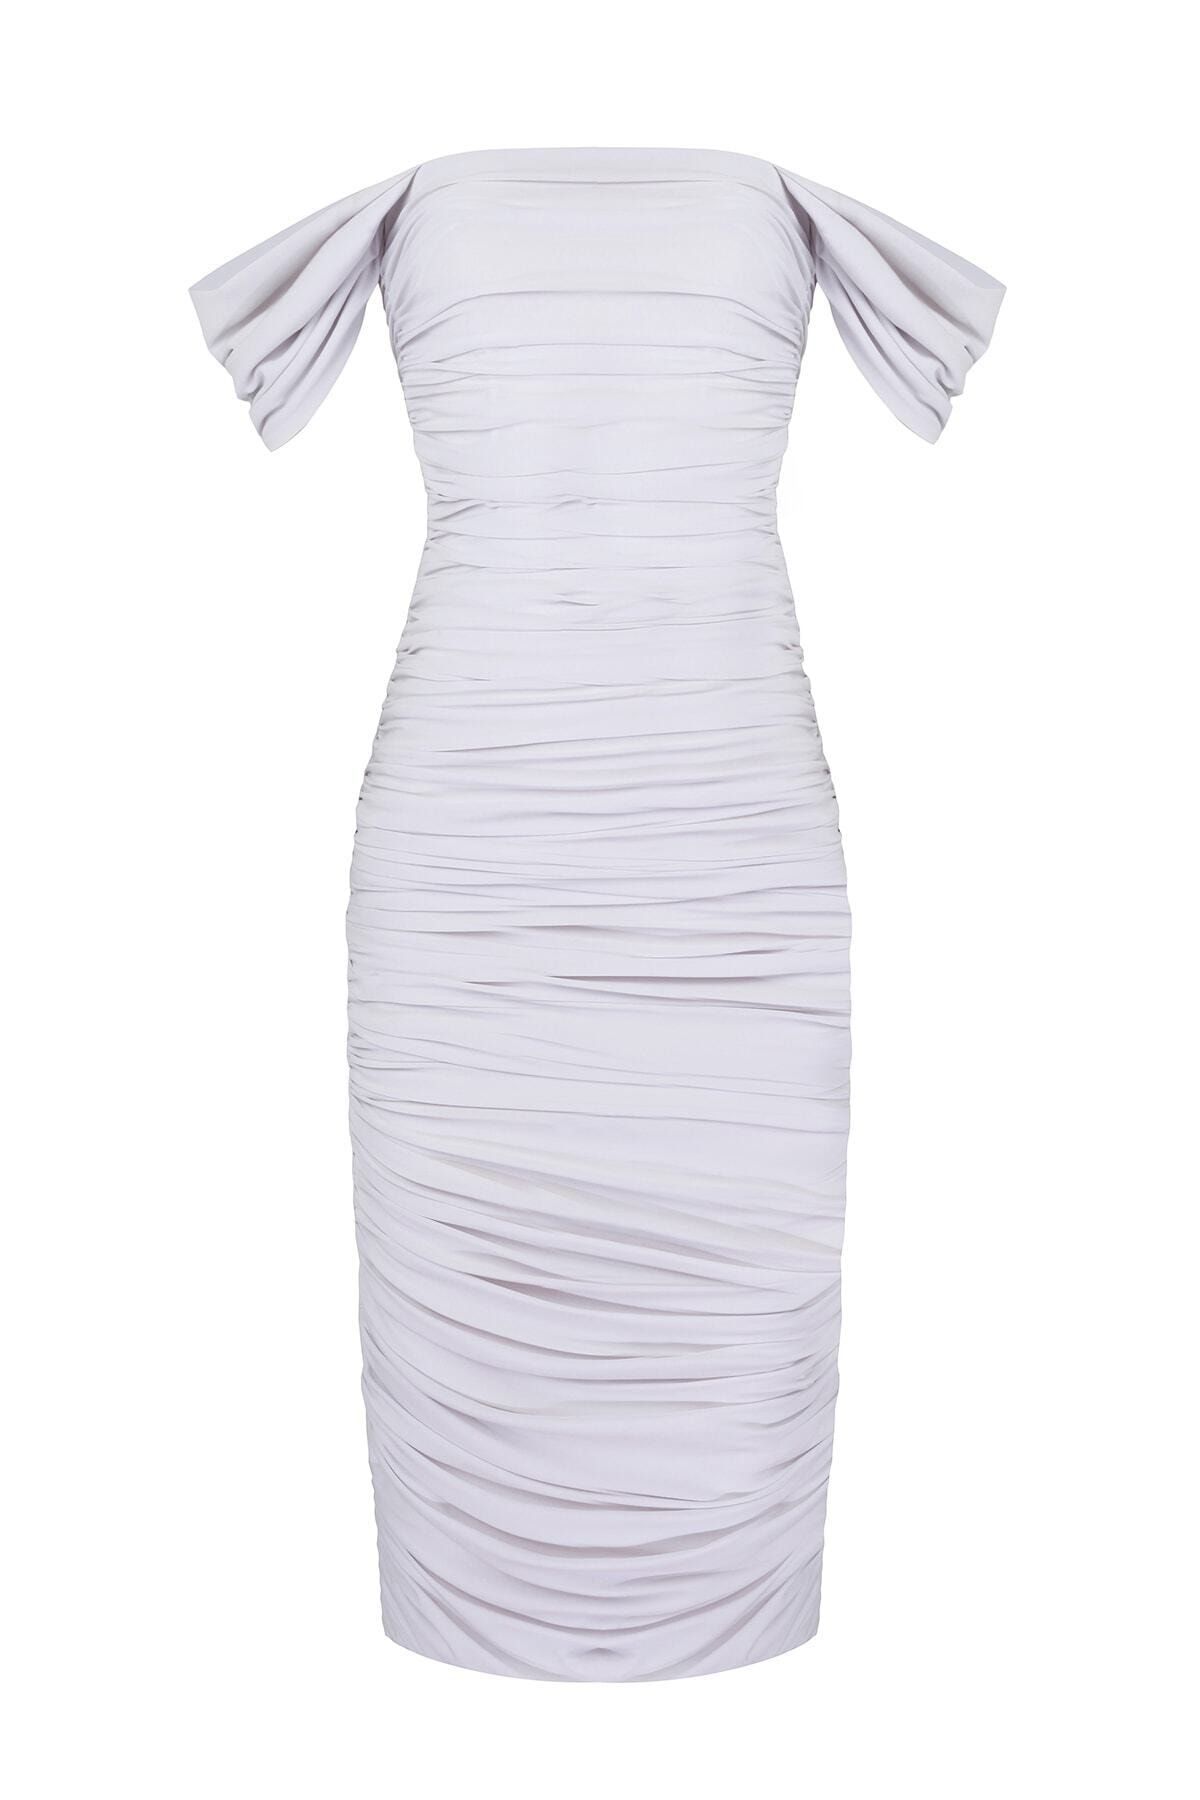 by eymen design Kadın Beyaz Düşük Kol Drapeli Midi Elbise